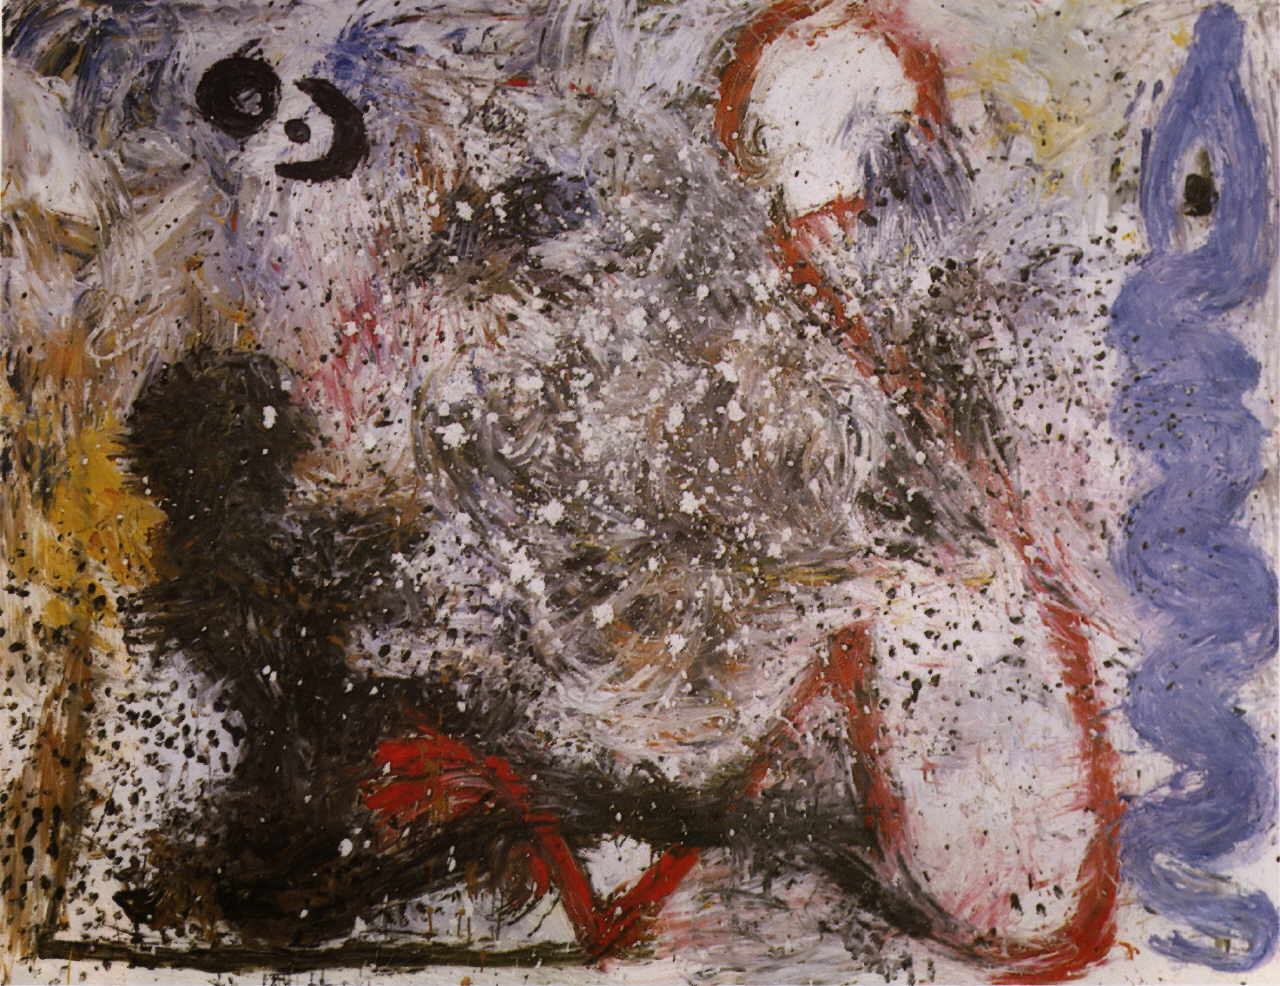 Garcia-Sevilla Ferran 
Ohne Titel, 1983
Acryl / Leinwand
195 x 250 cm